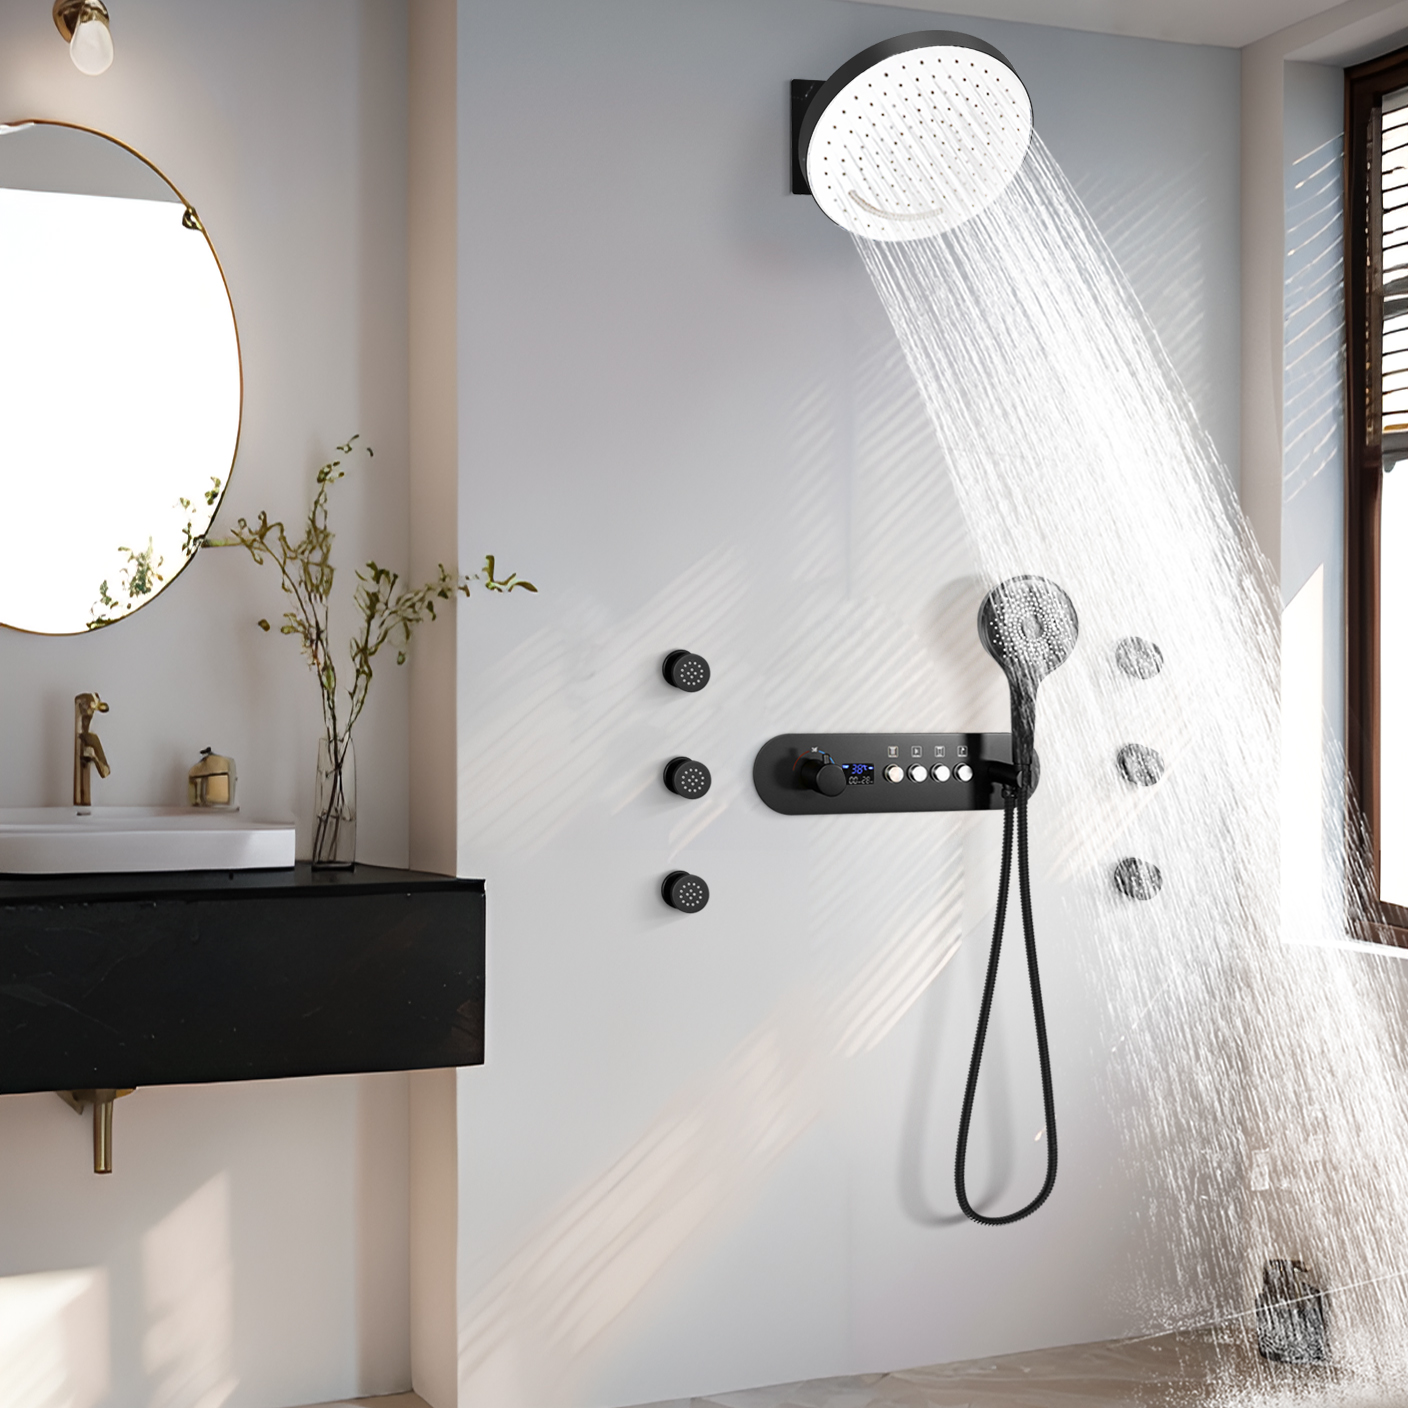 جناح غرفة الاستحمام ذو الجدار الأسود المتدفق، درجة حرارة ثابتة، صنبور مياه الدش الصريح